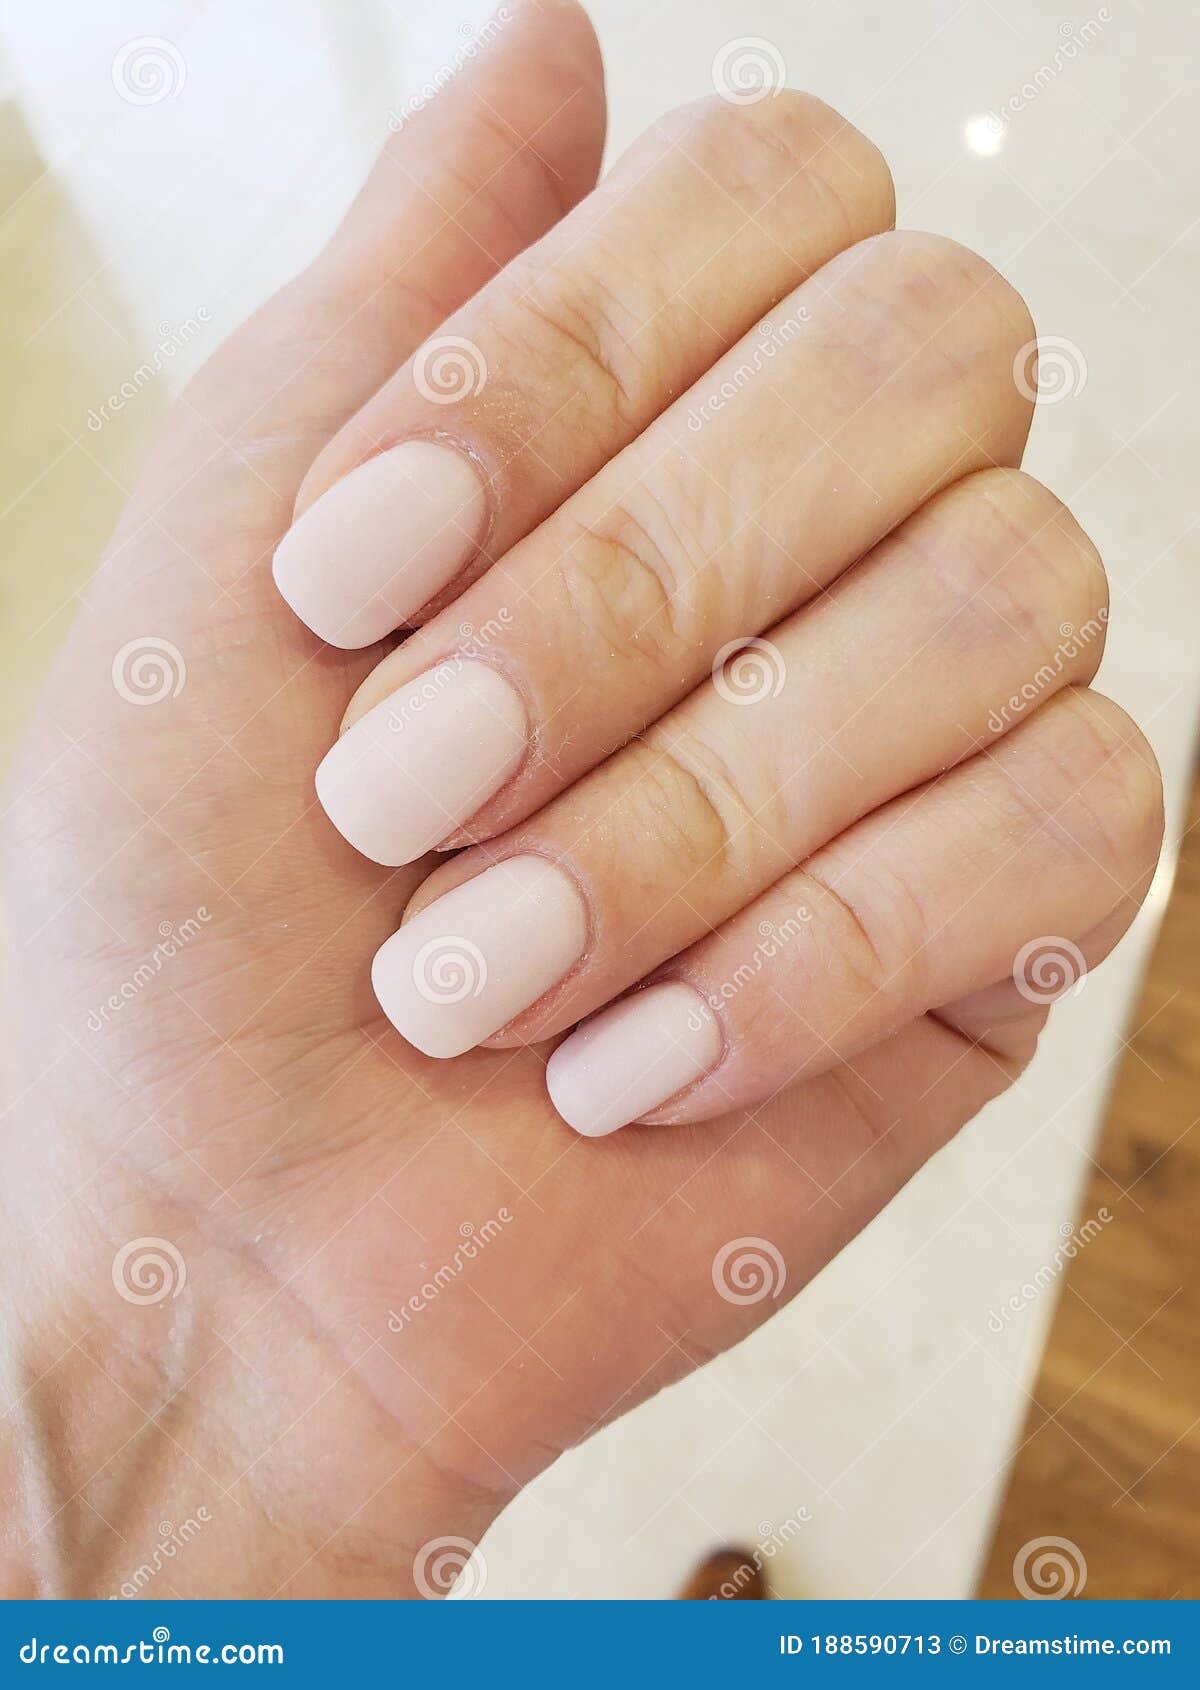 Natural Beautiful Short Nails Pink Nude Stock Image - Image of short, nail:  188590713